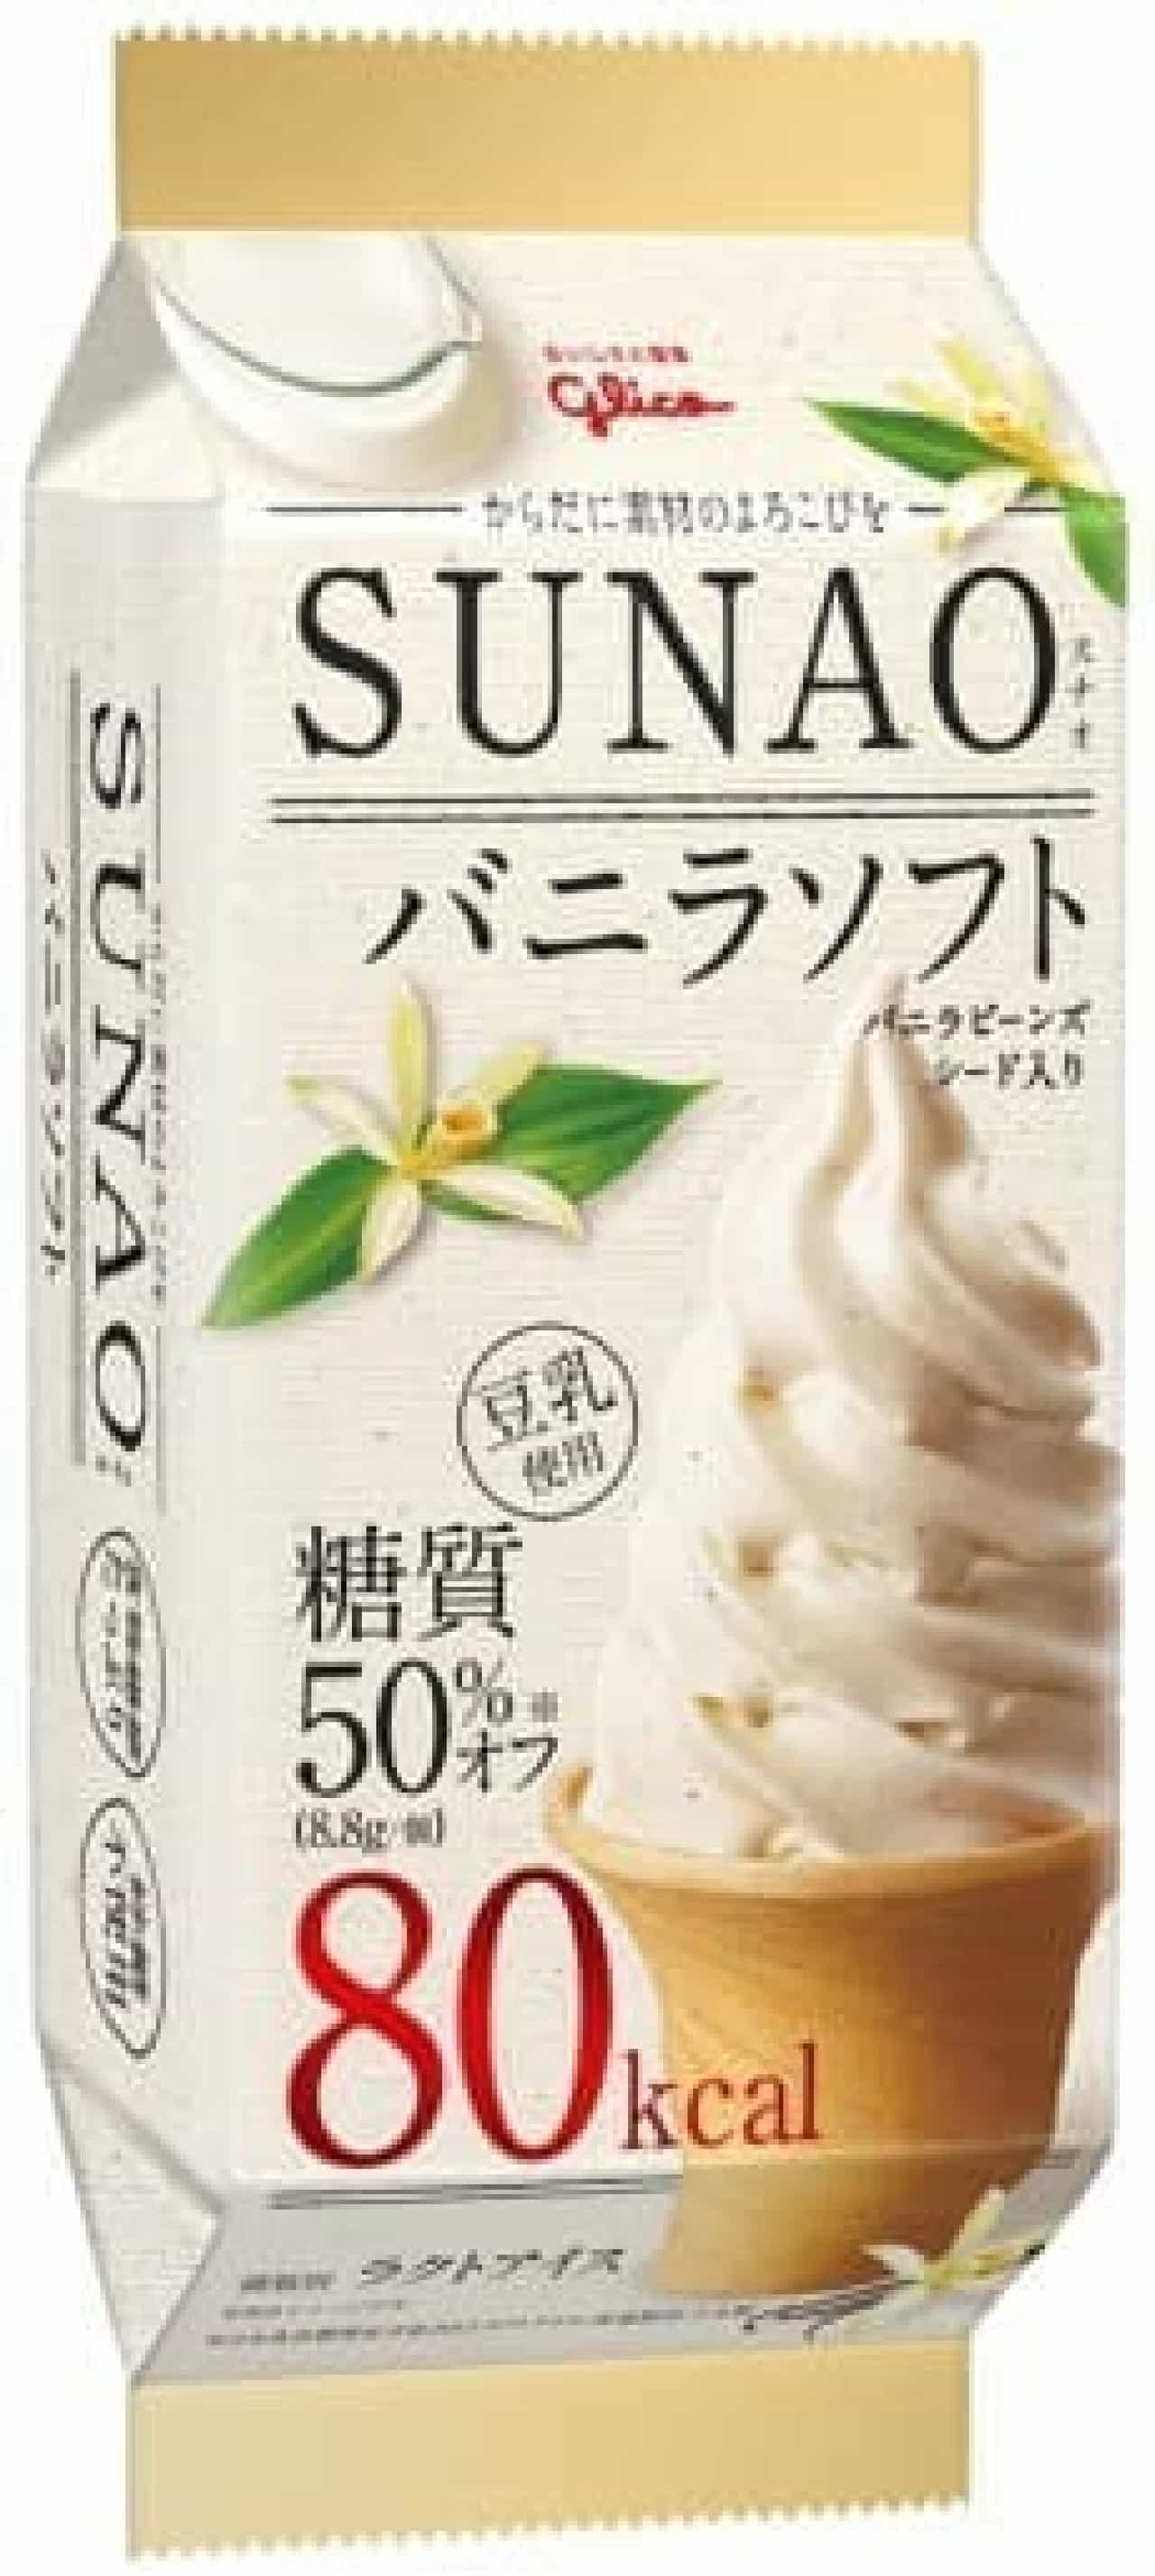 Ezaki Glico "SUNAO" Vanilla Soft